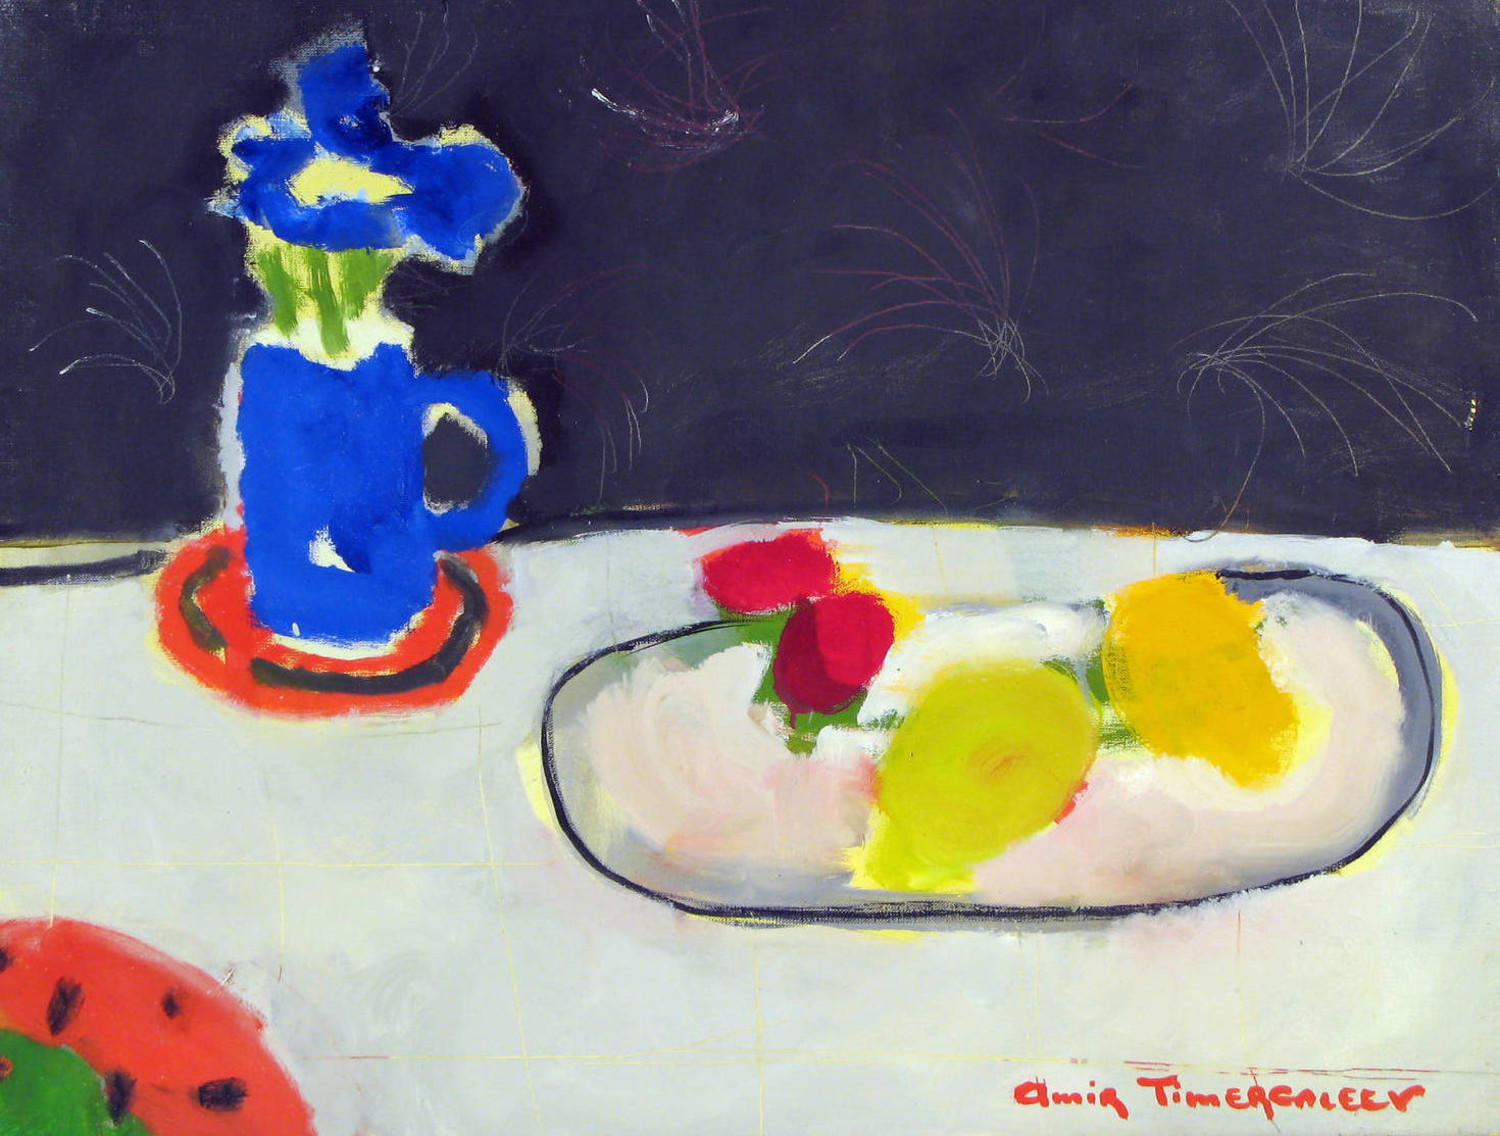 Натютморт с фруктами (Обновленная коллекция). Амир Тимергалеев. 2006, холст, масло, 80x60